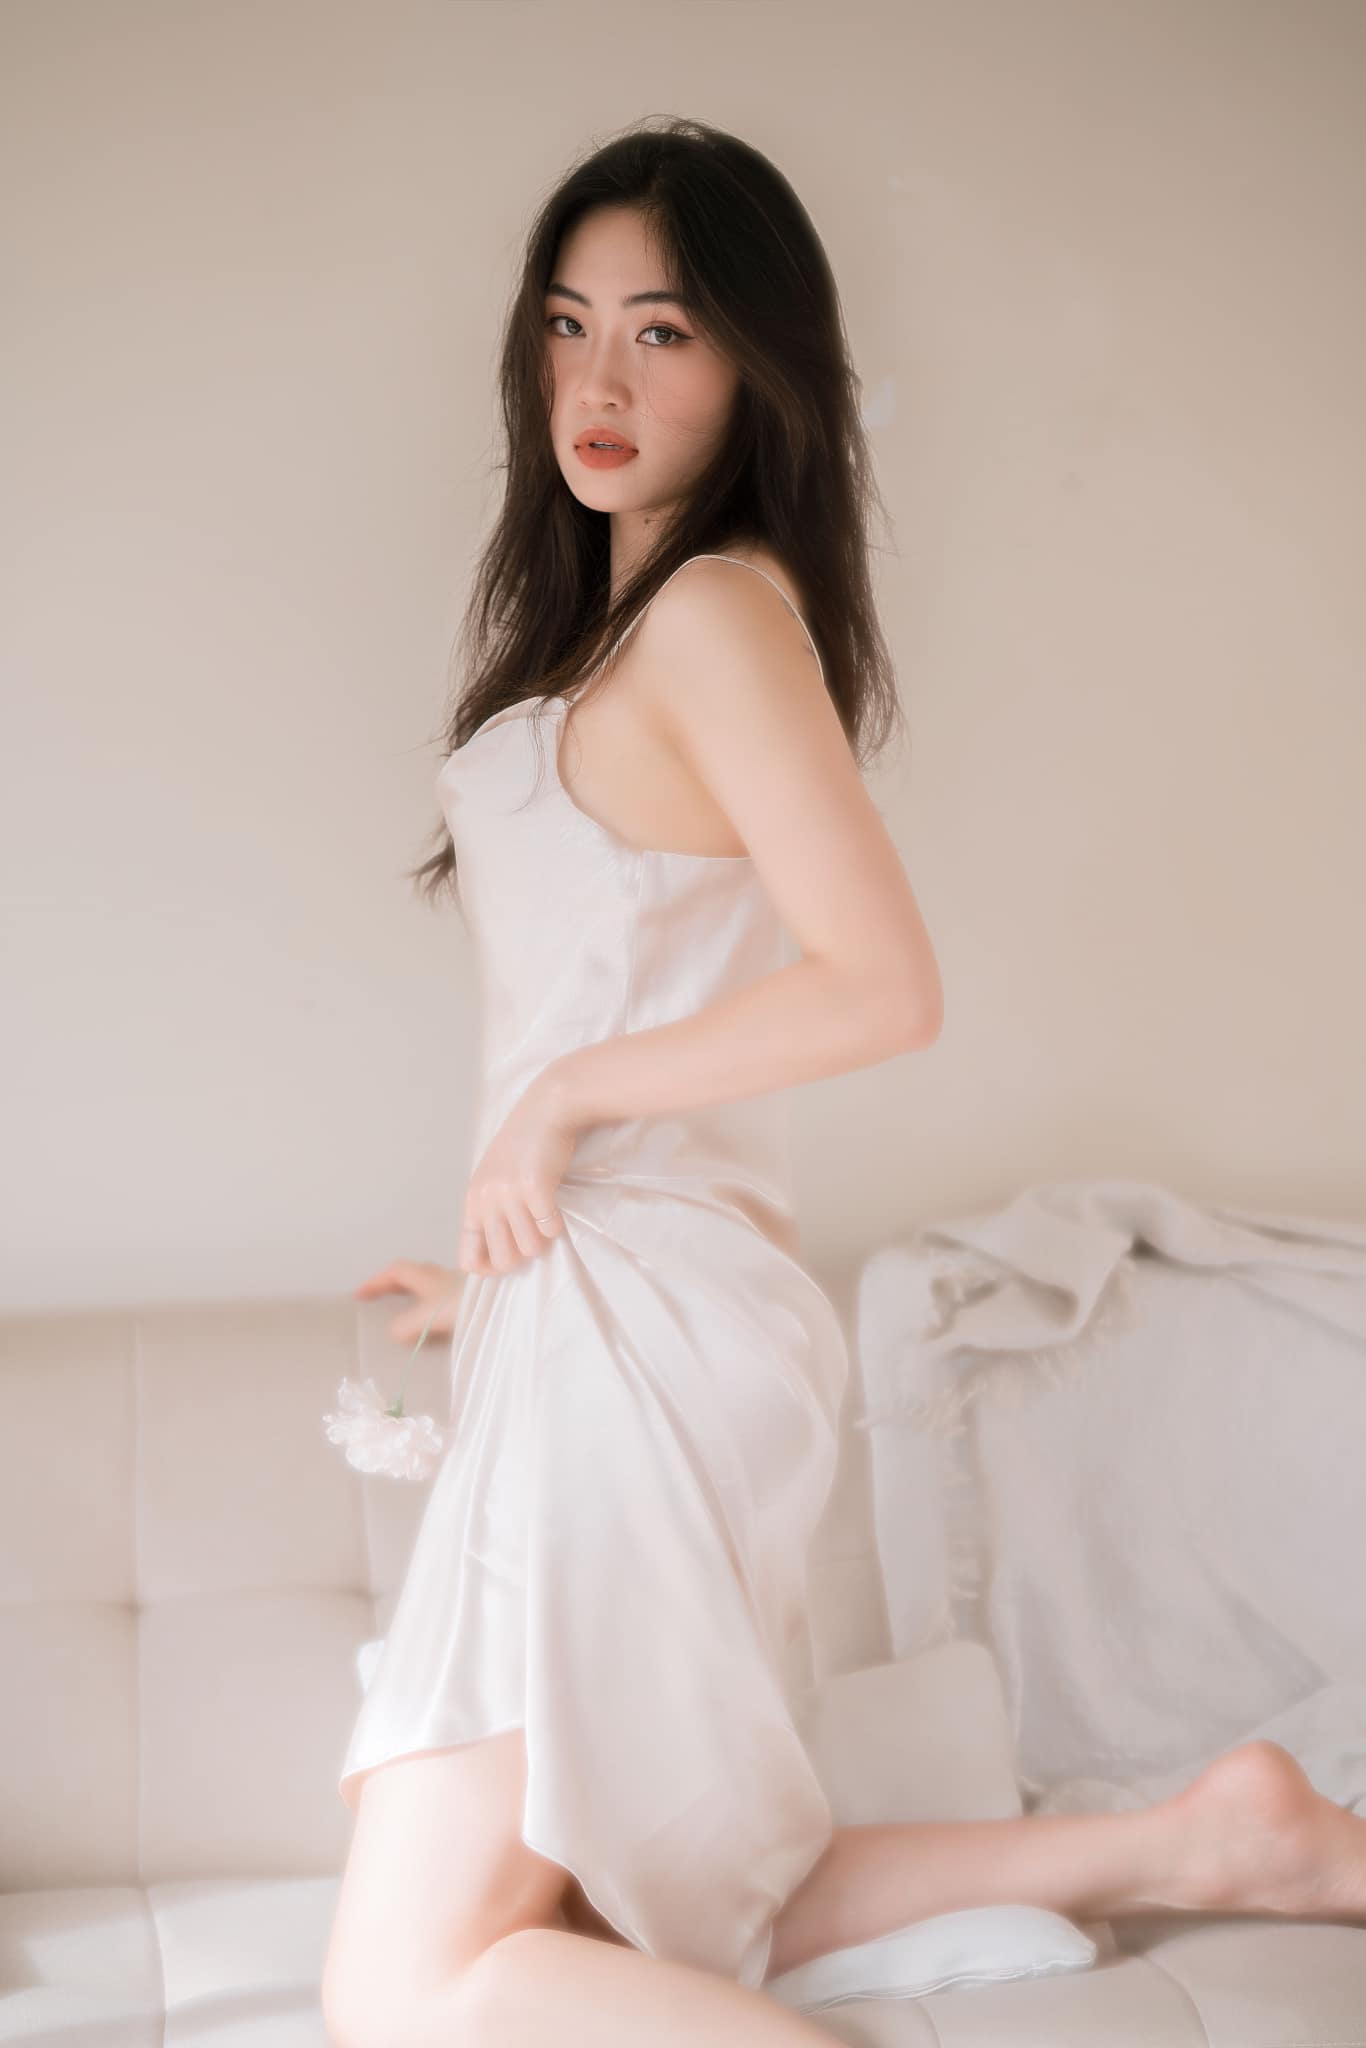 Hoa khôi bóng chuyền Việt Hương trước khi lấy chồng: Cao 1m78, người đẹp như người mẫu - 8